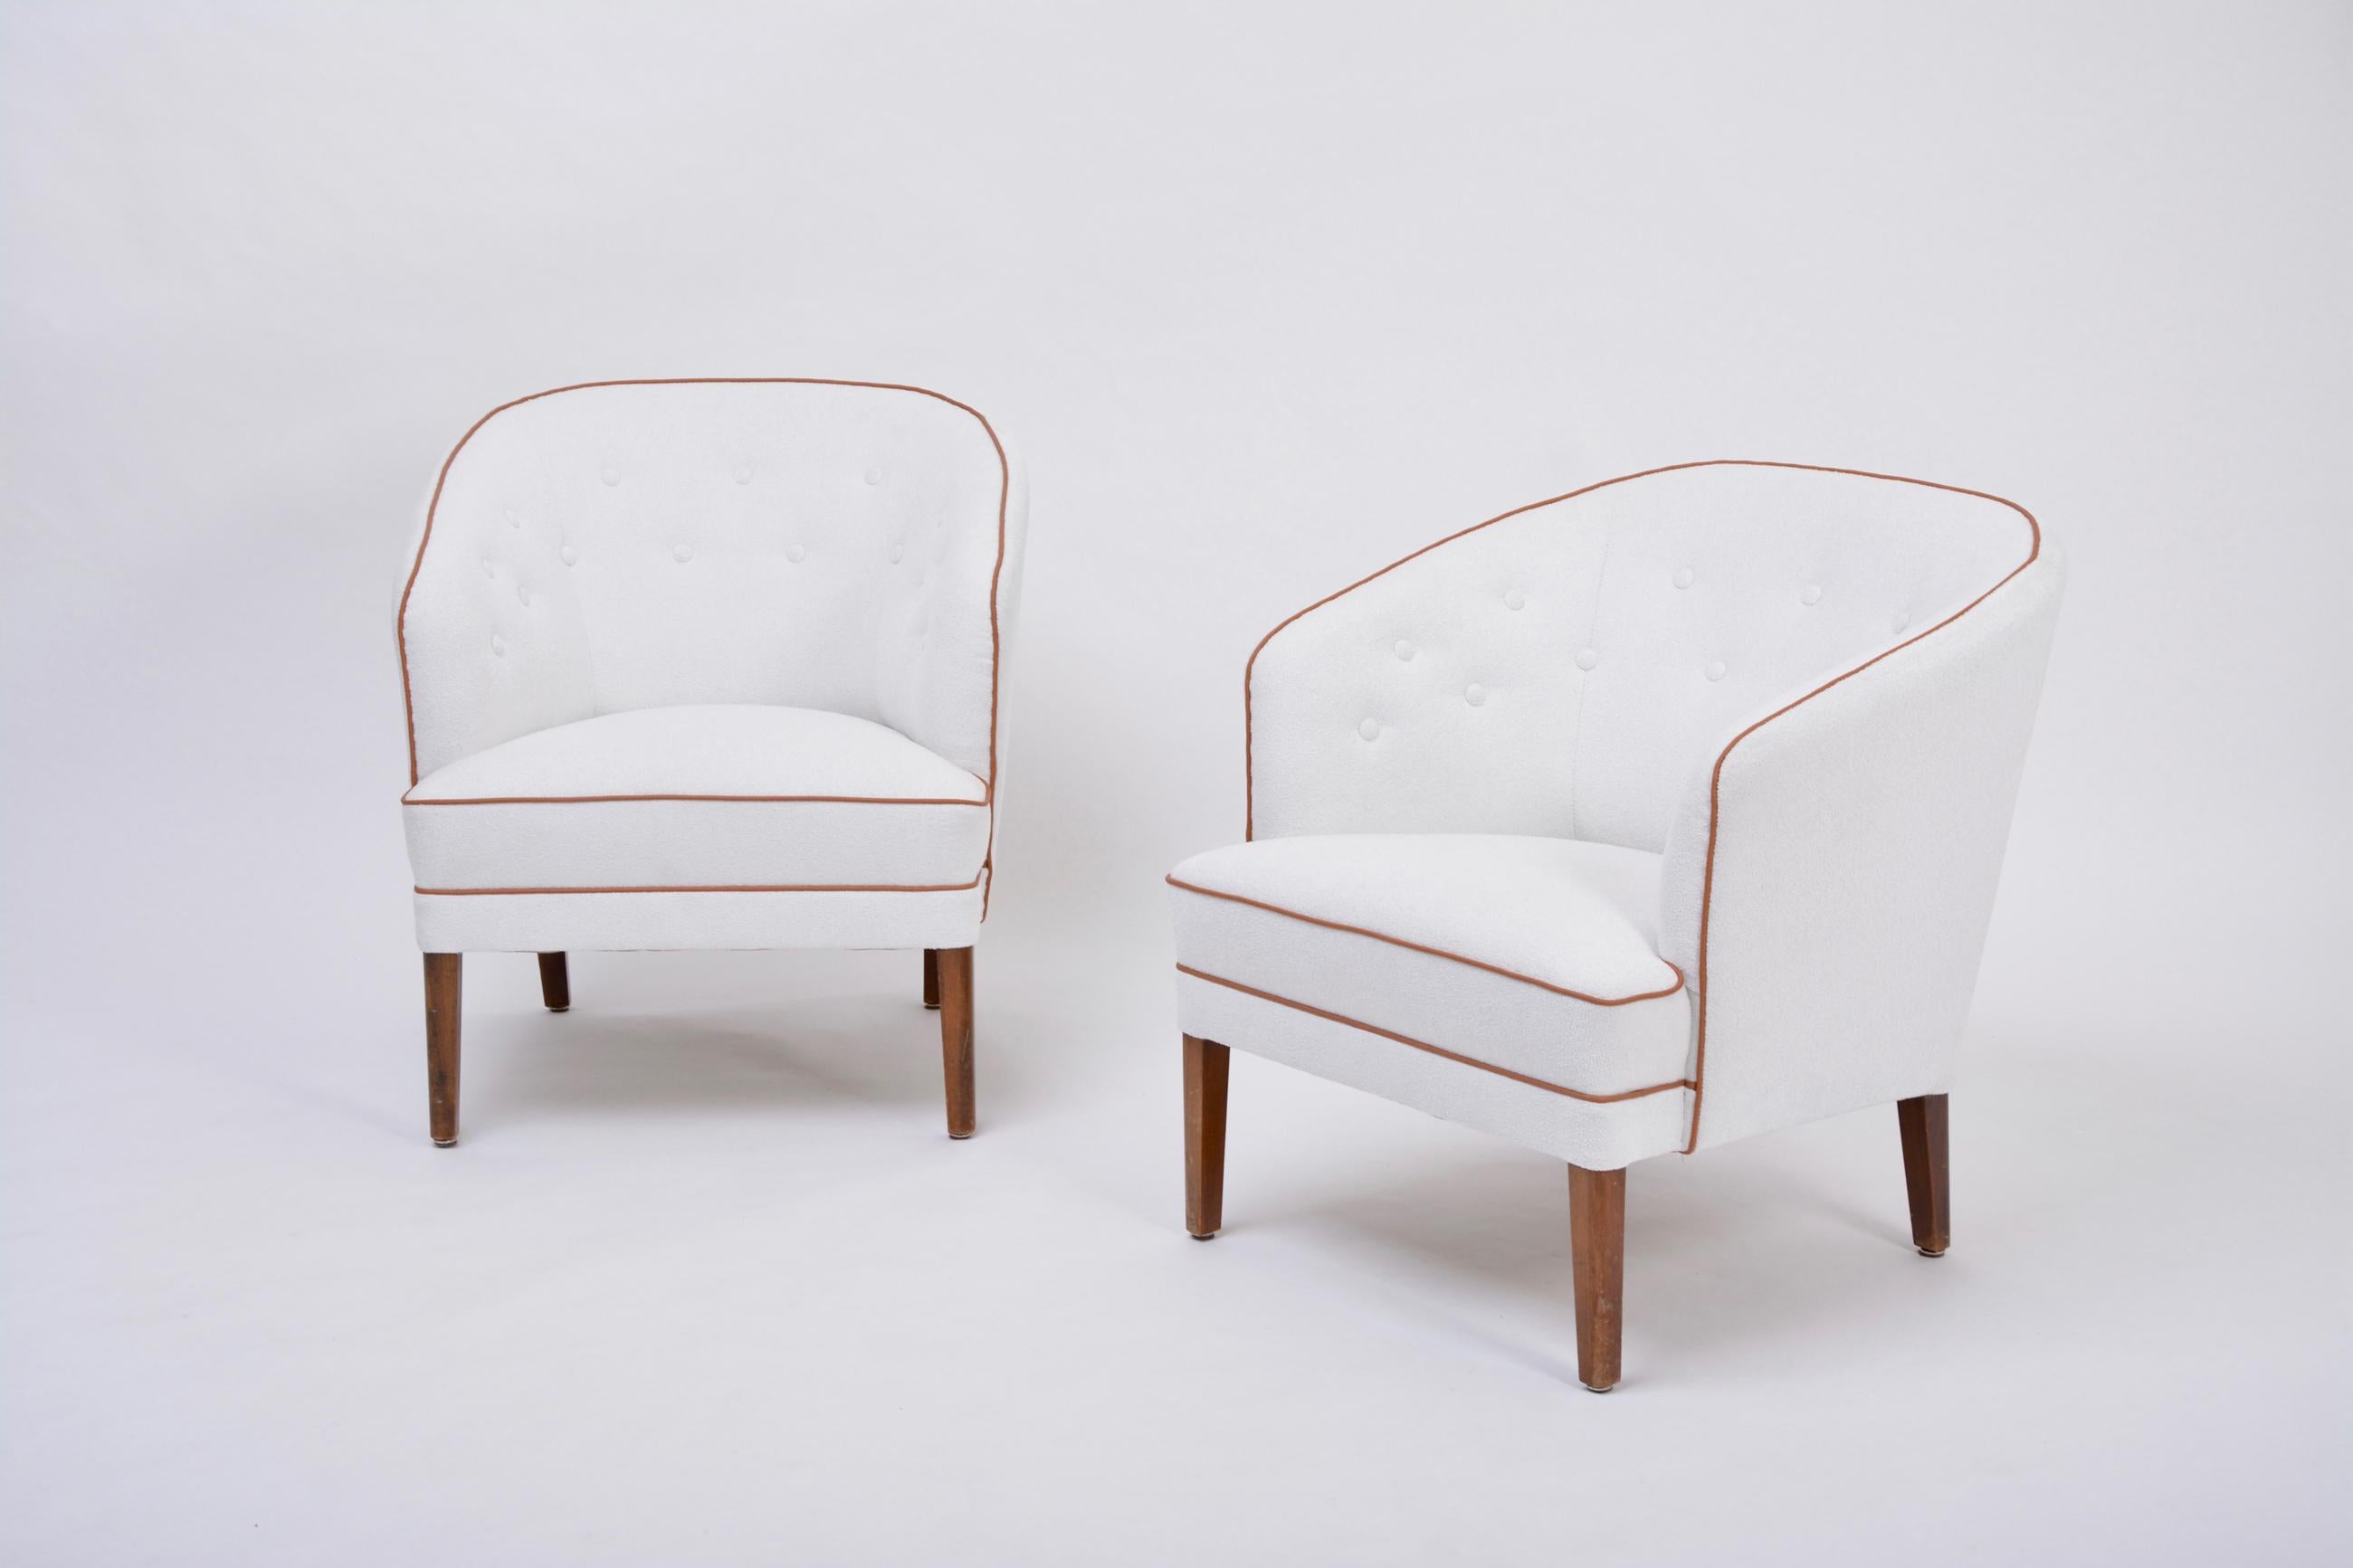 Paire de fauteuils danois du milieu du siècle, retapissés en blanc, par Ludvig Pontoppidan

Très rare ensemble de deux fauteuils aux courbes élégantes conçus et réalisés par le maître artisan danois Ludvig Pontoppidan. Les chaises sont en excellent